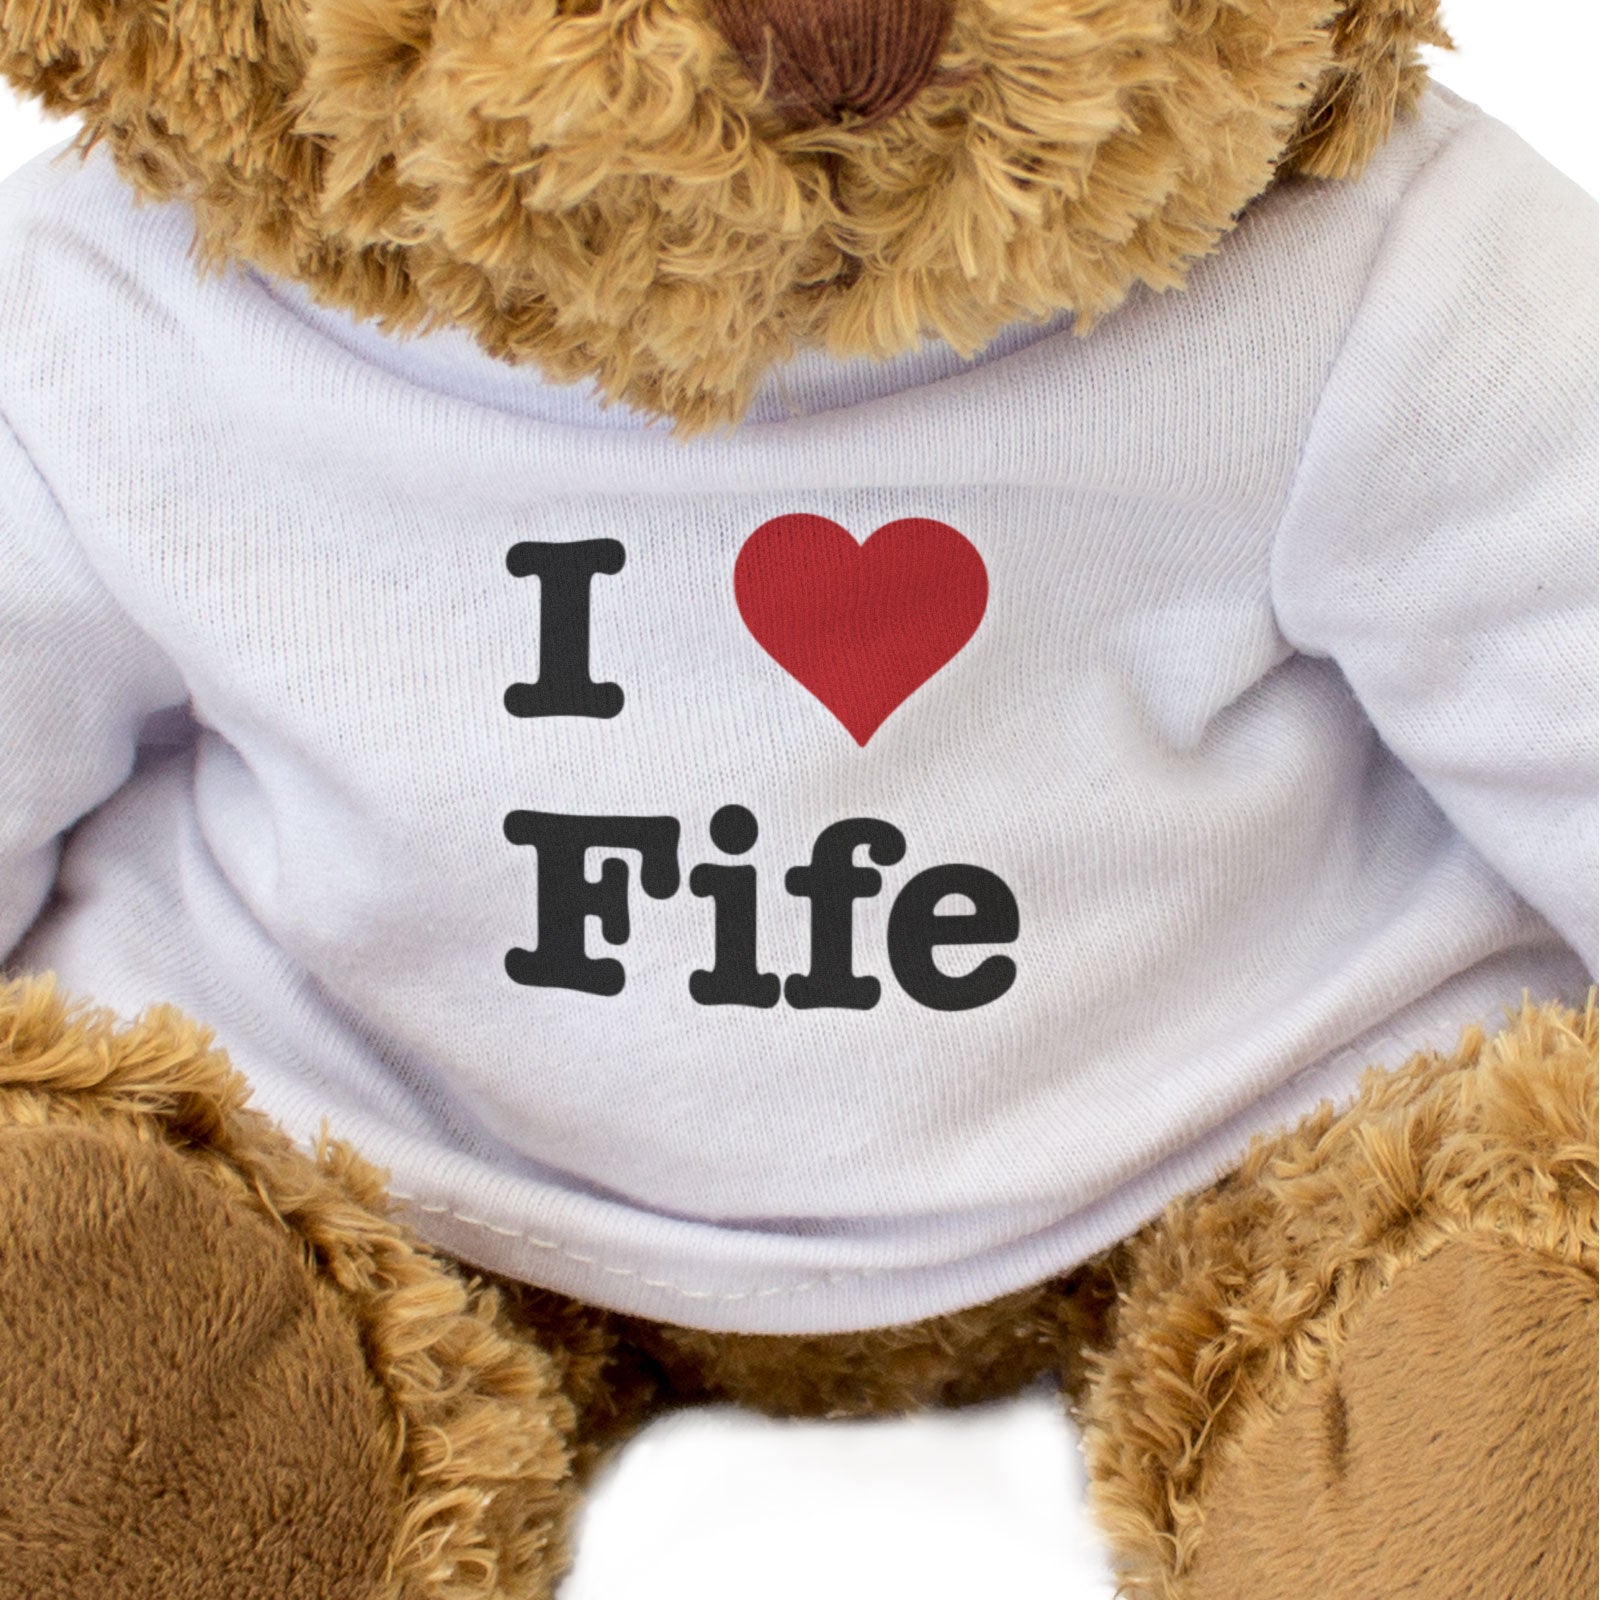 I Love Fife - Teddy Bear